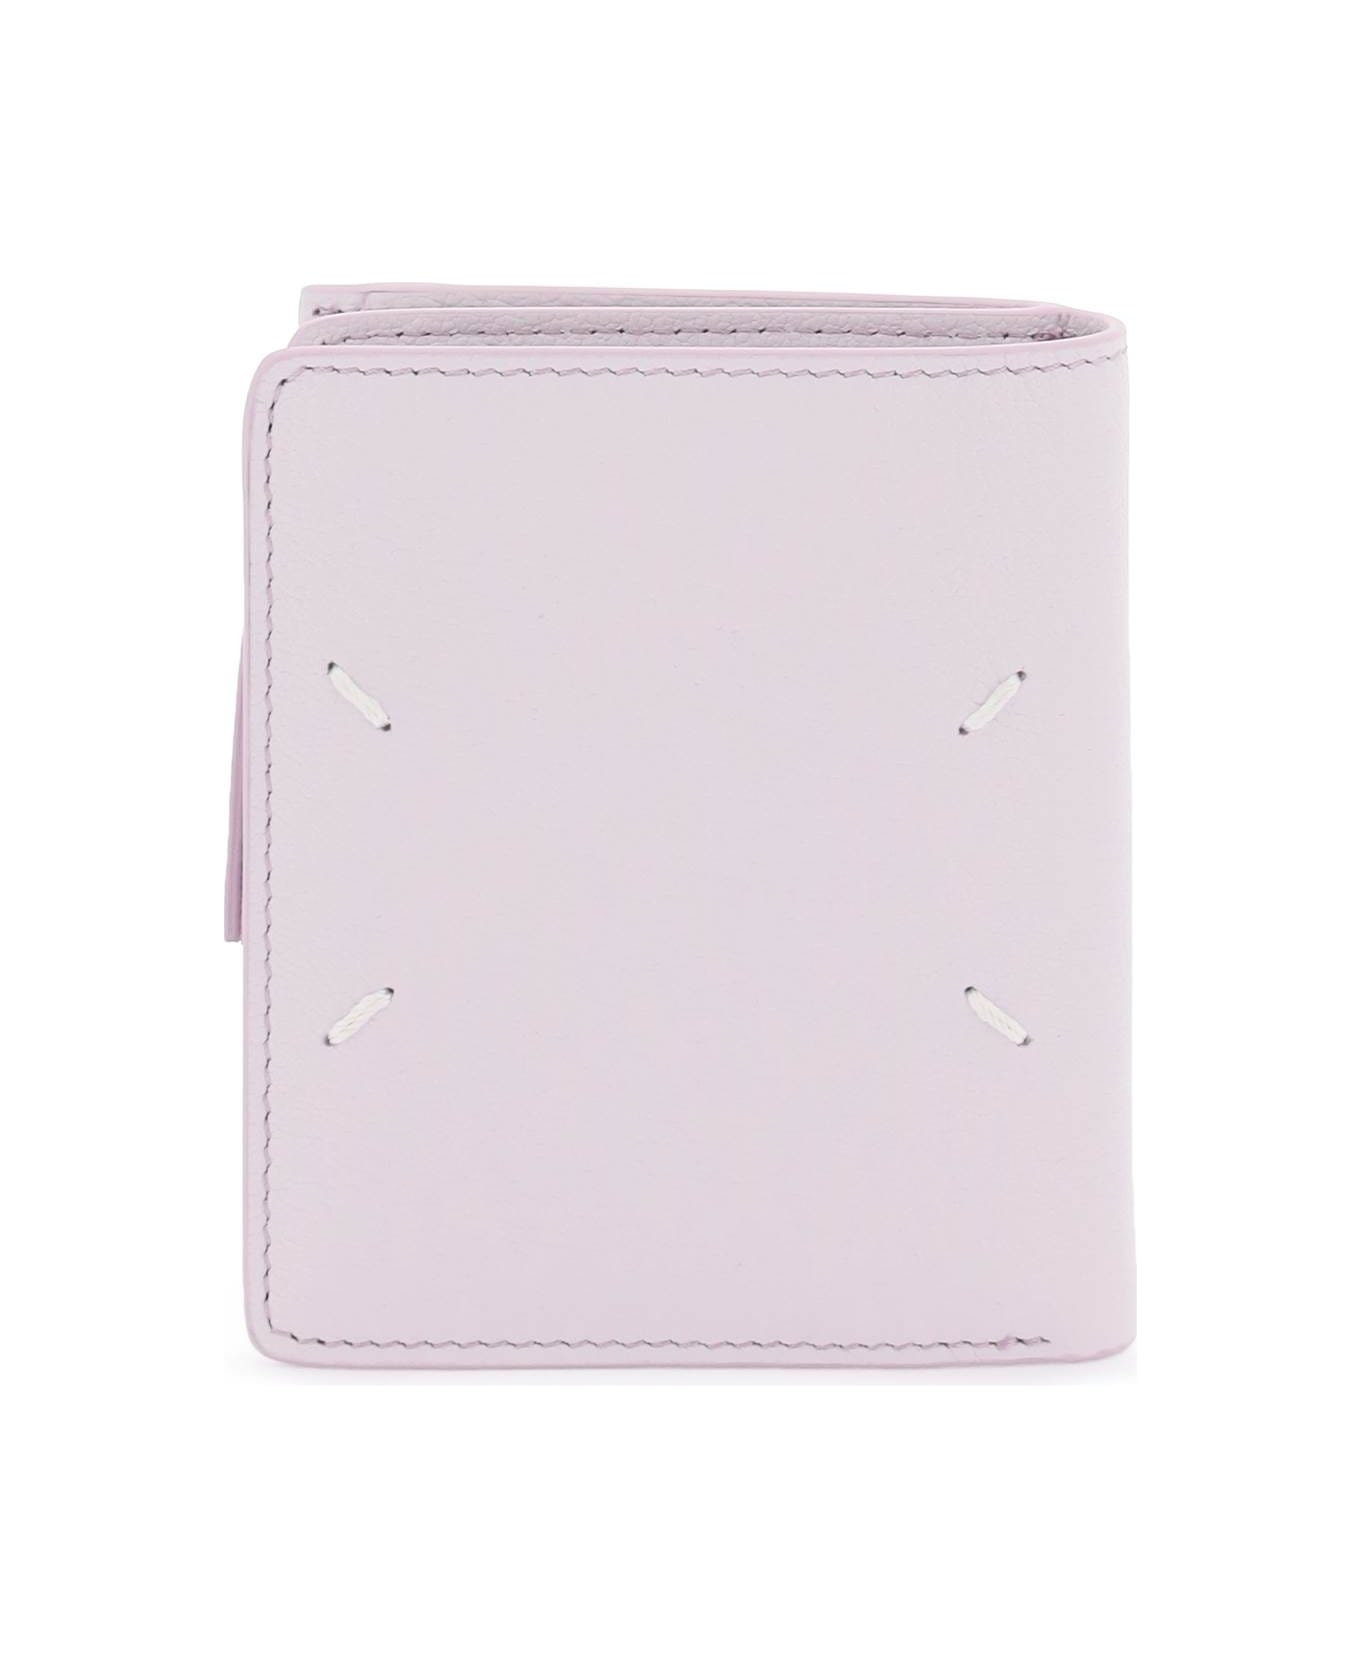 Maison Margiela Four Stitches Wallet - WISTERIA (Purple) 財布